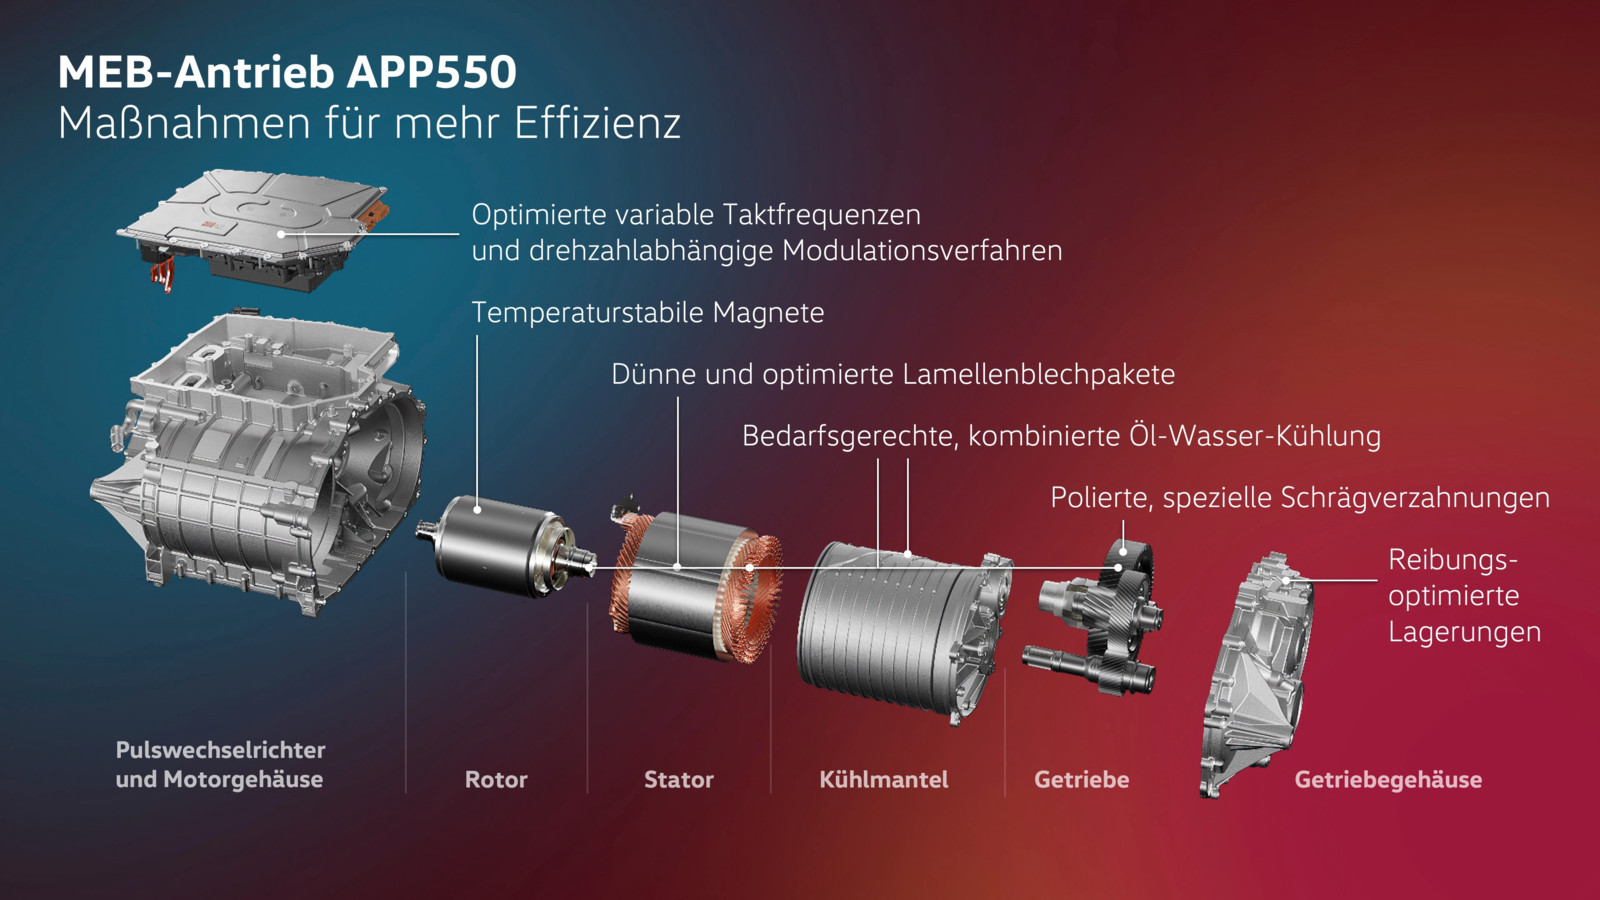 Die auf Effizienz optimierten Komponenten des neuen MEB-Antriebs APP550.